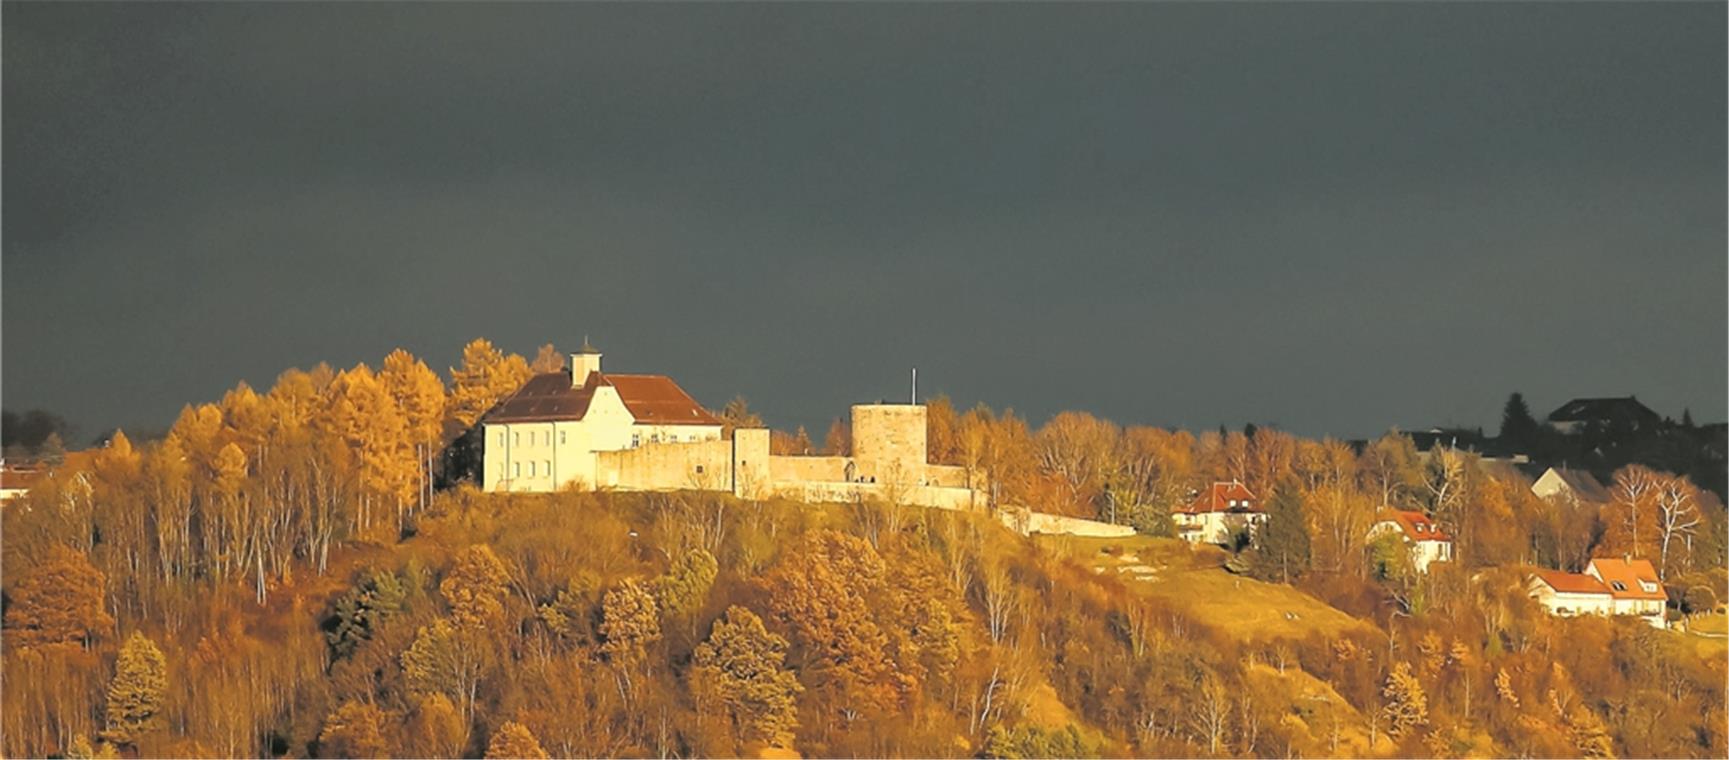 Von den dunklen Wolken ließ sich die Novembersonne nicht vertreiben und strahlte munter weiter auf die Burg Ebersberg in Auenwald. Foto: A. Becher